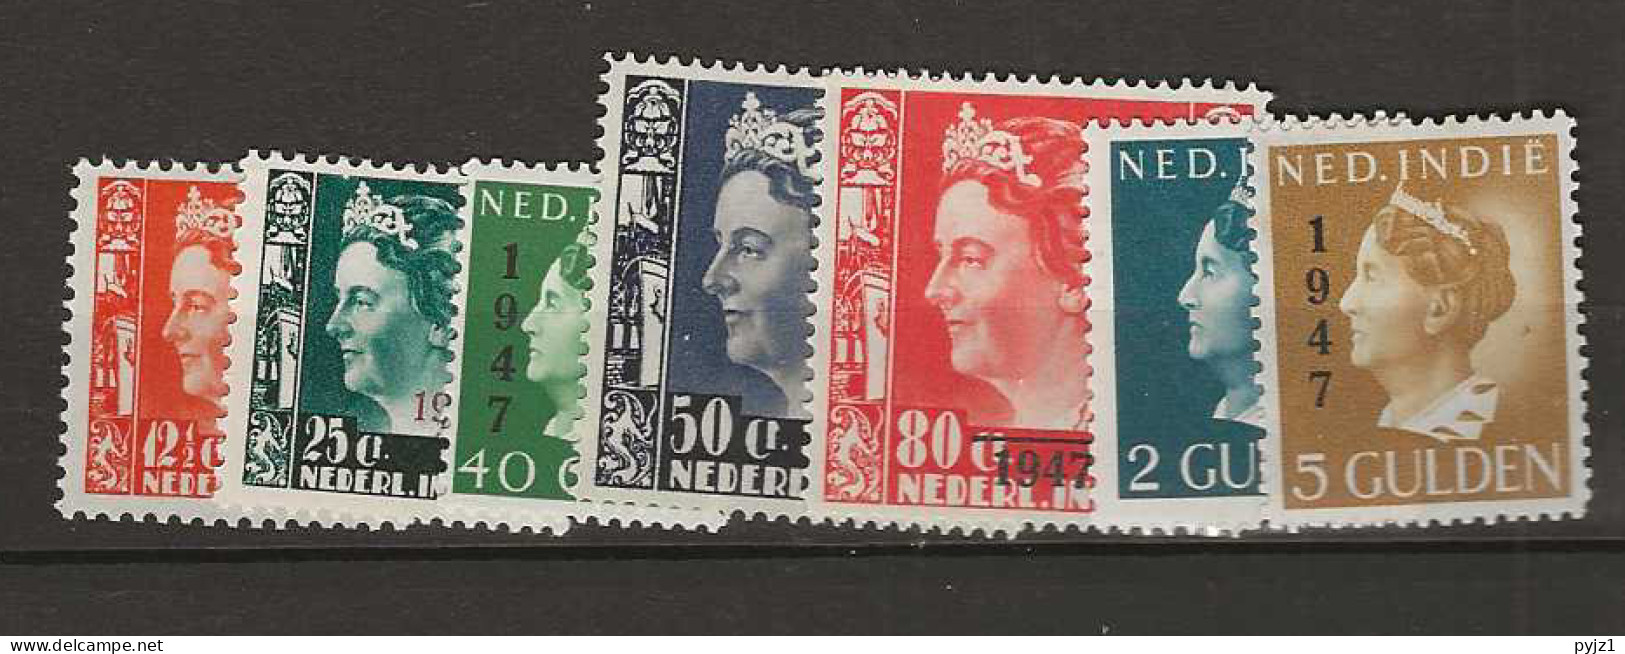 1947 MH Nederlands Indië NVPH 326-32 - Indes Néerlandaises